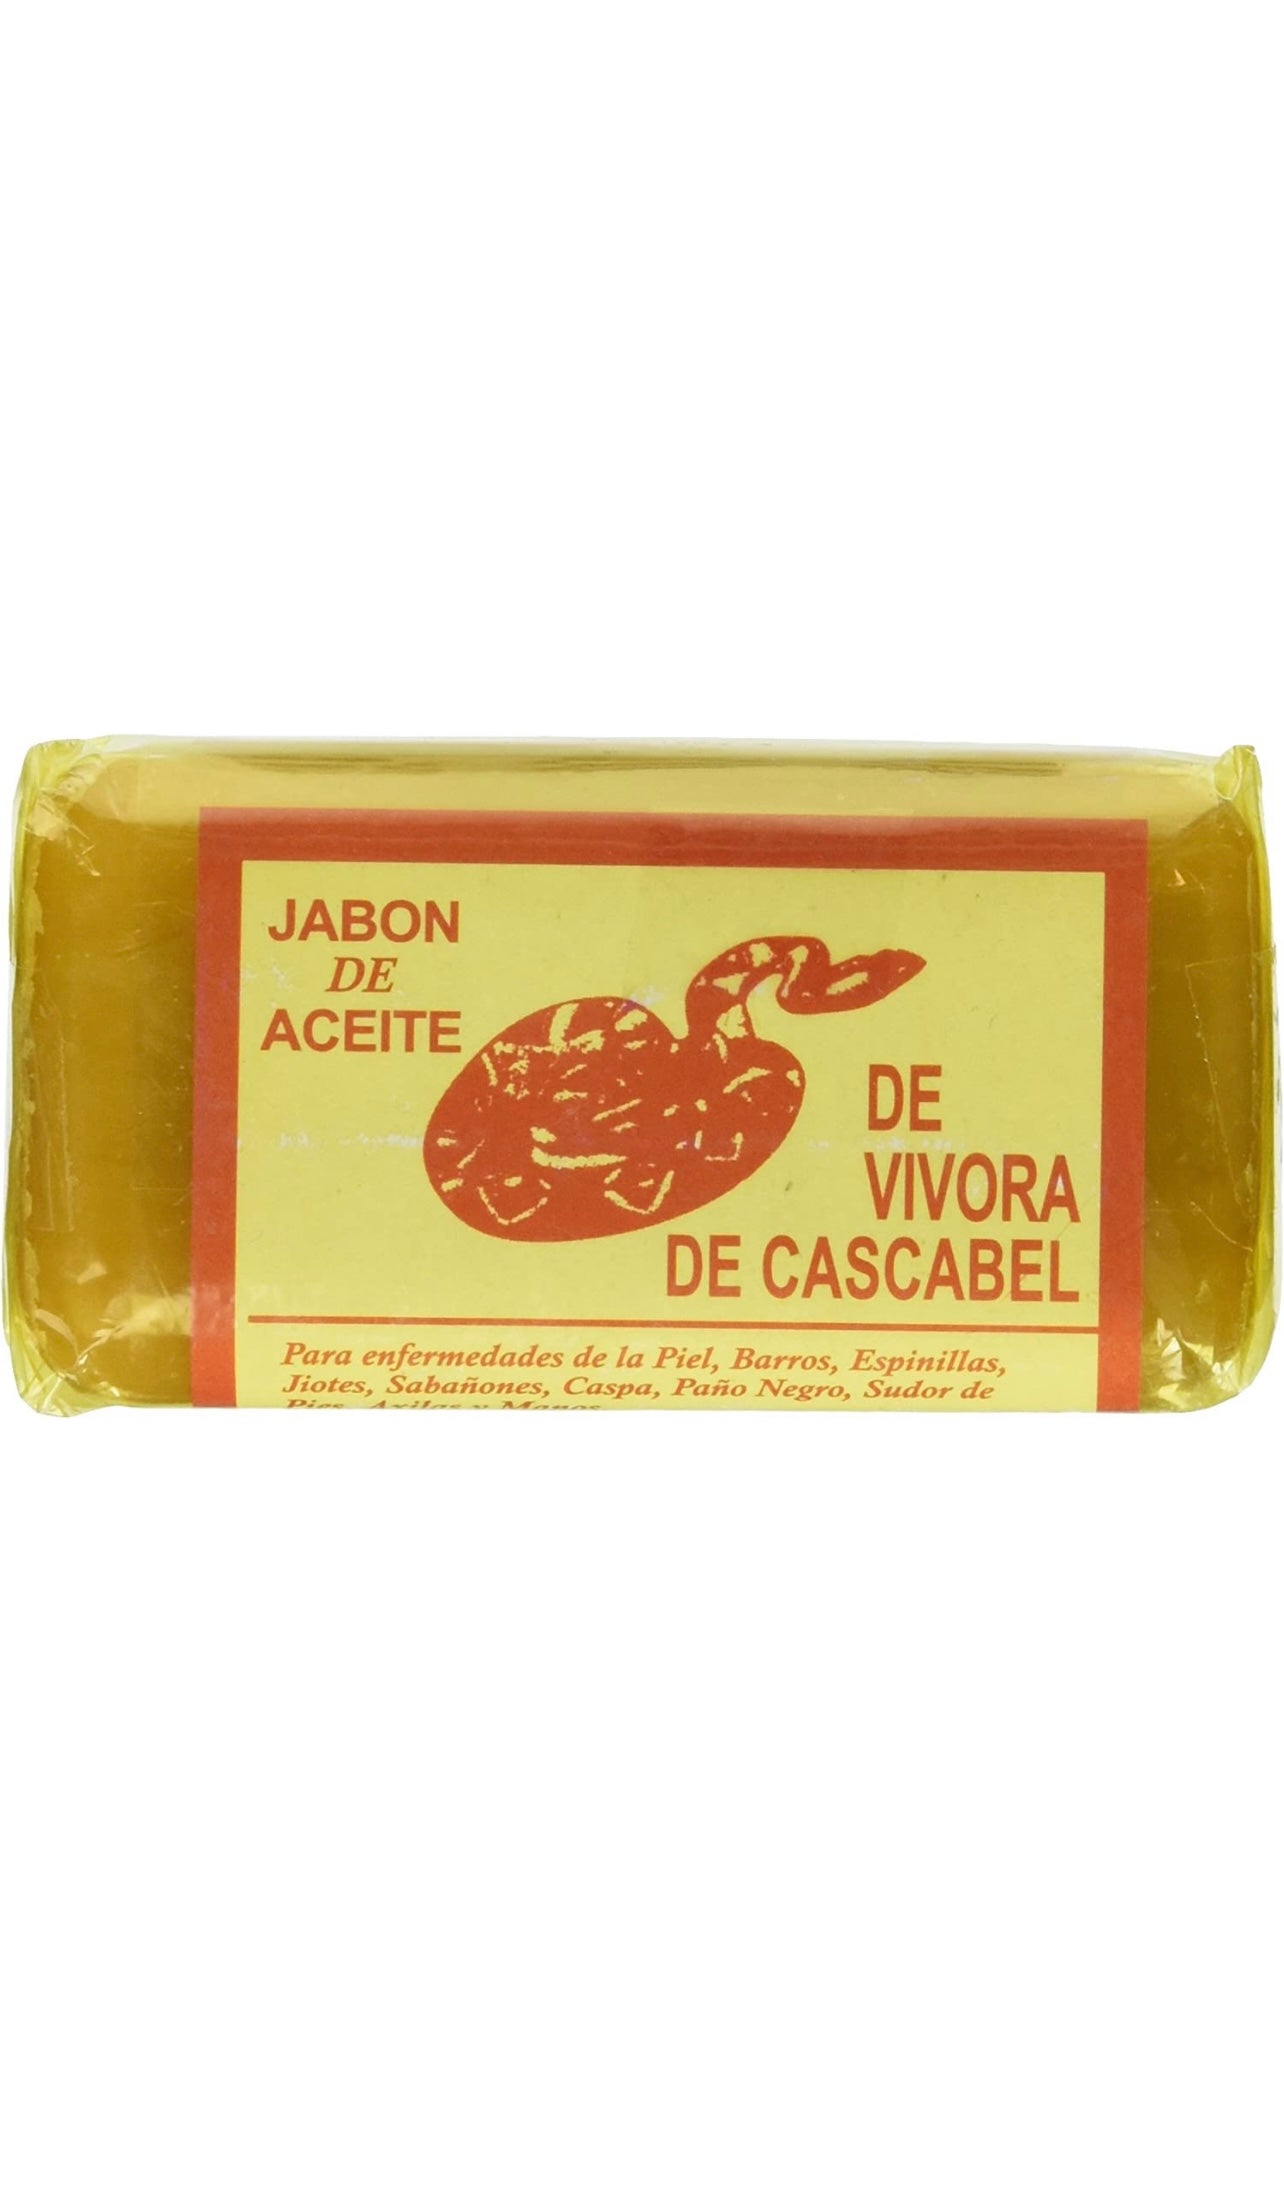 Jabon de Vibora de Cascabel